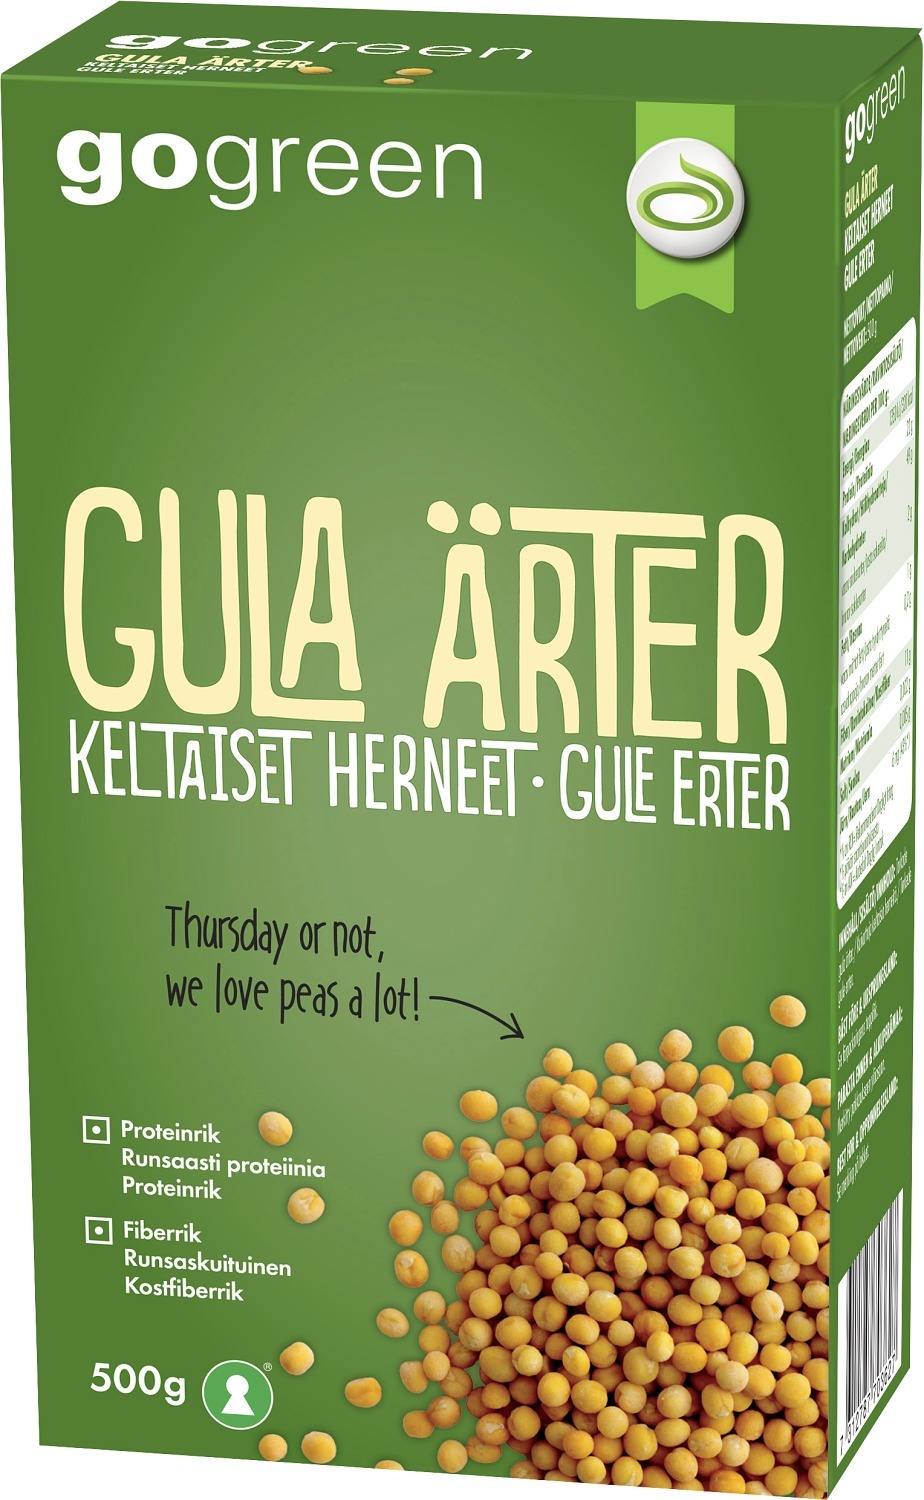 Gula_arter 500_g